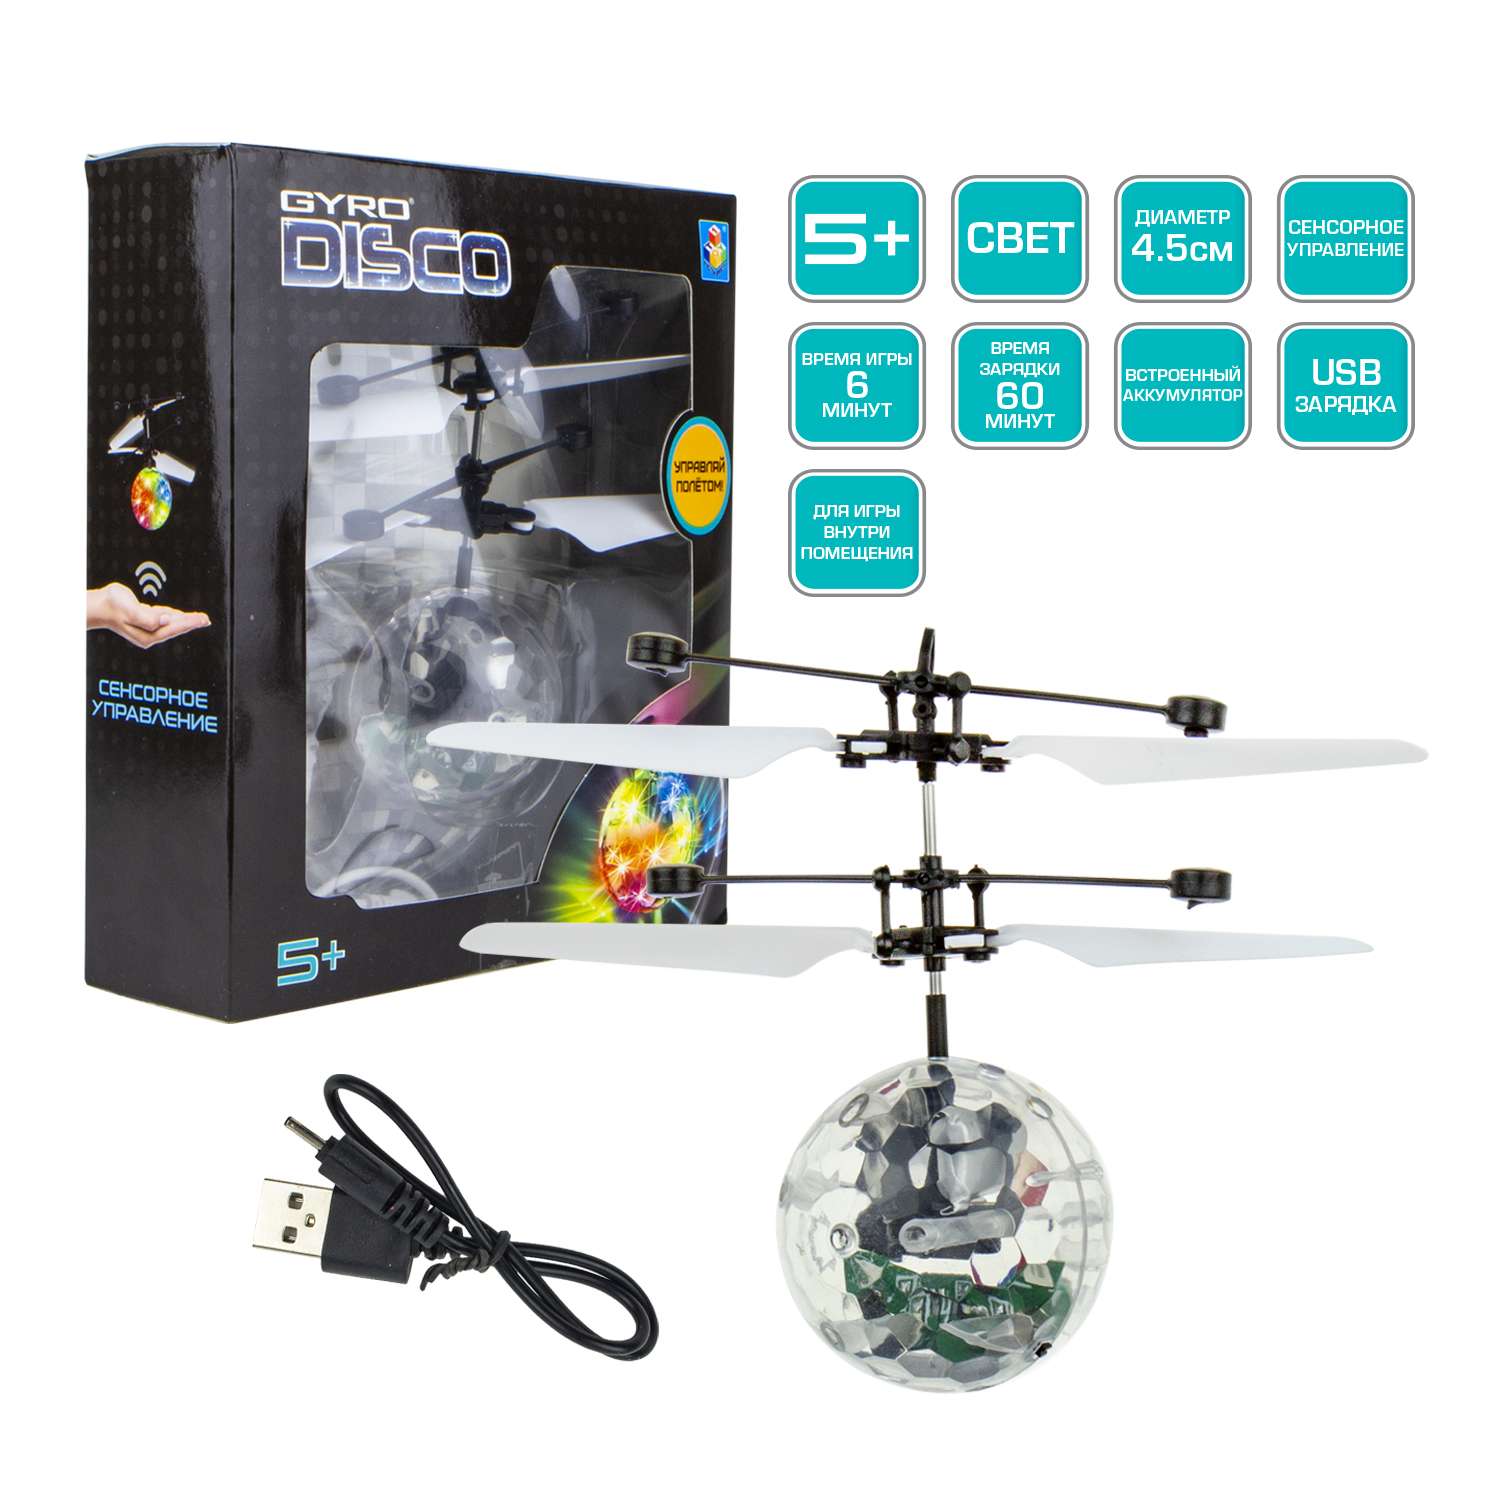 Интерактивная игрушка 1TOY Gyro-Disco шар на сенсорном управлении со световыми эффектами - фото 2